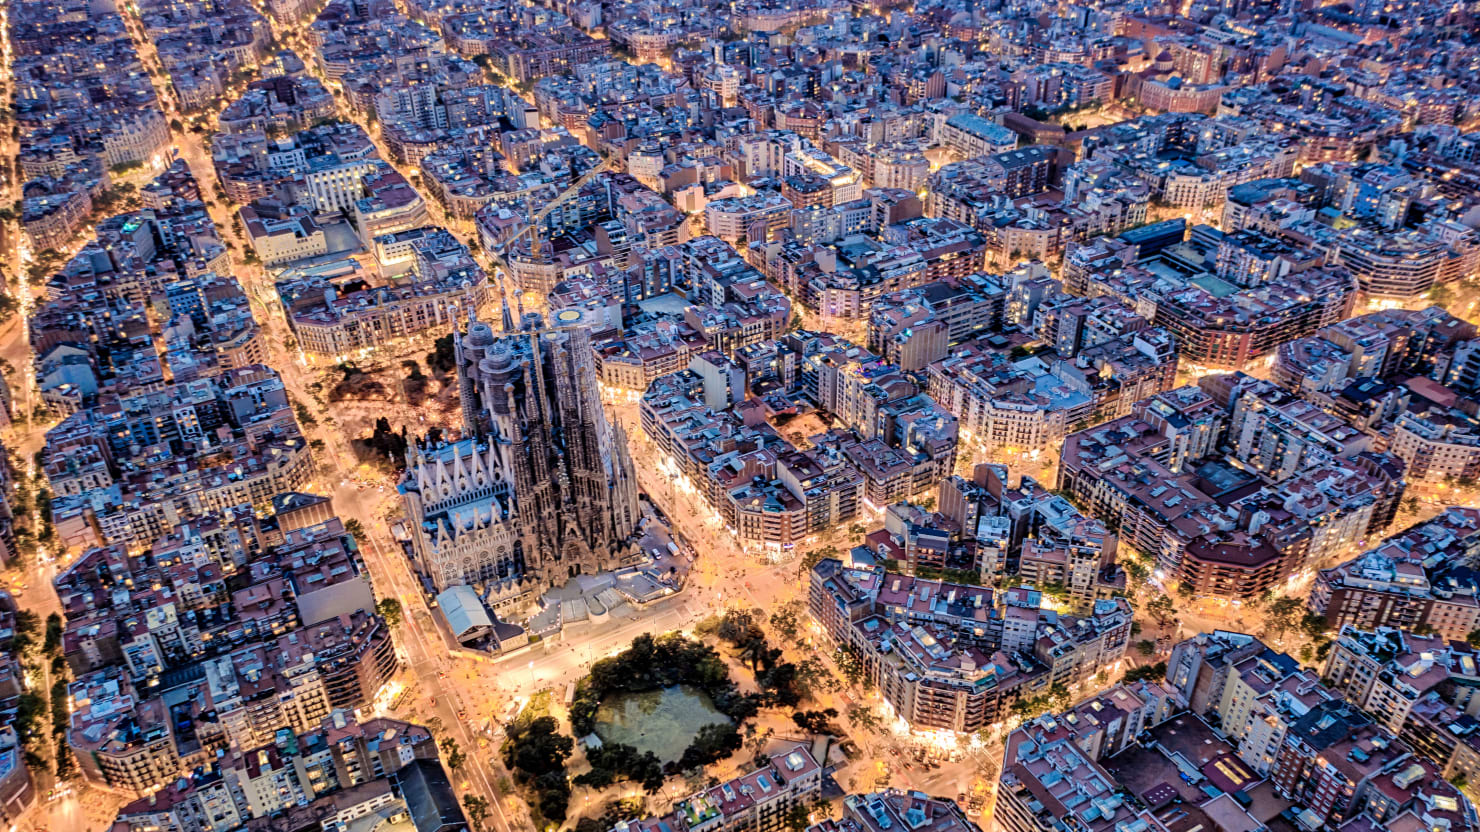 The Counterculture Phenomenon That Made Barcelona a Design Hotspot